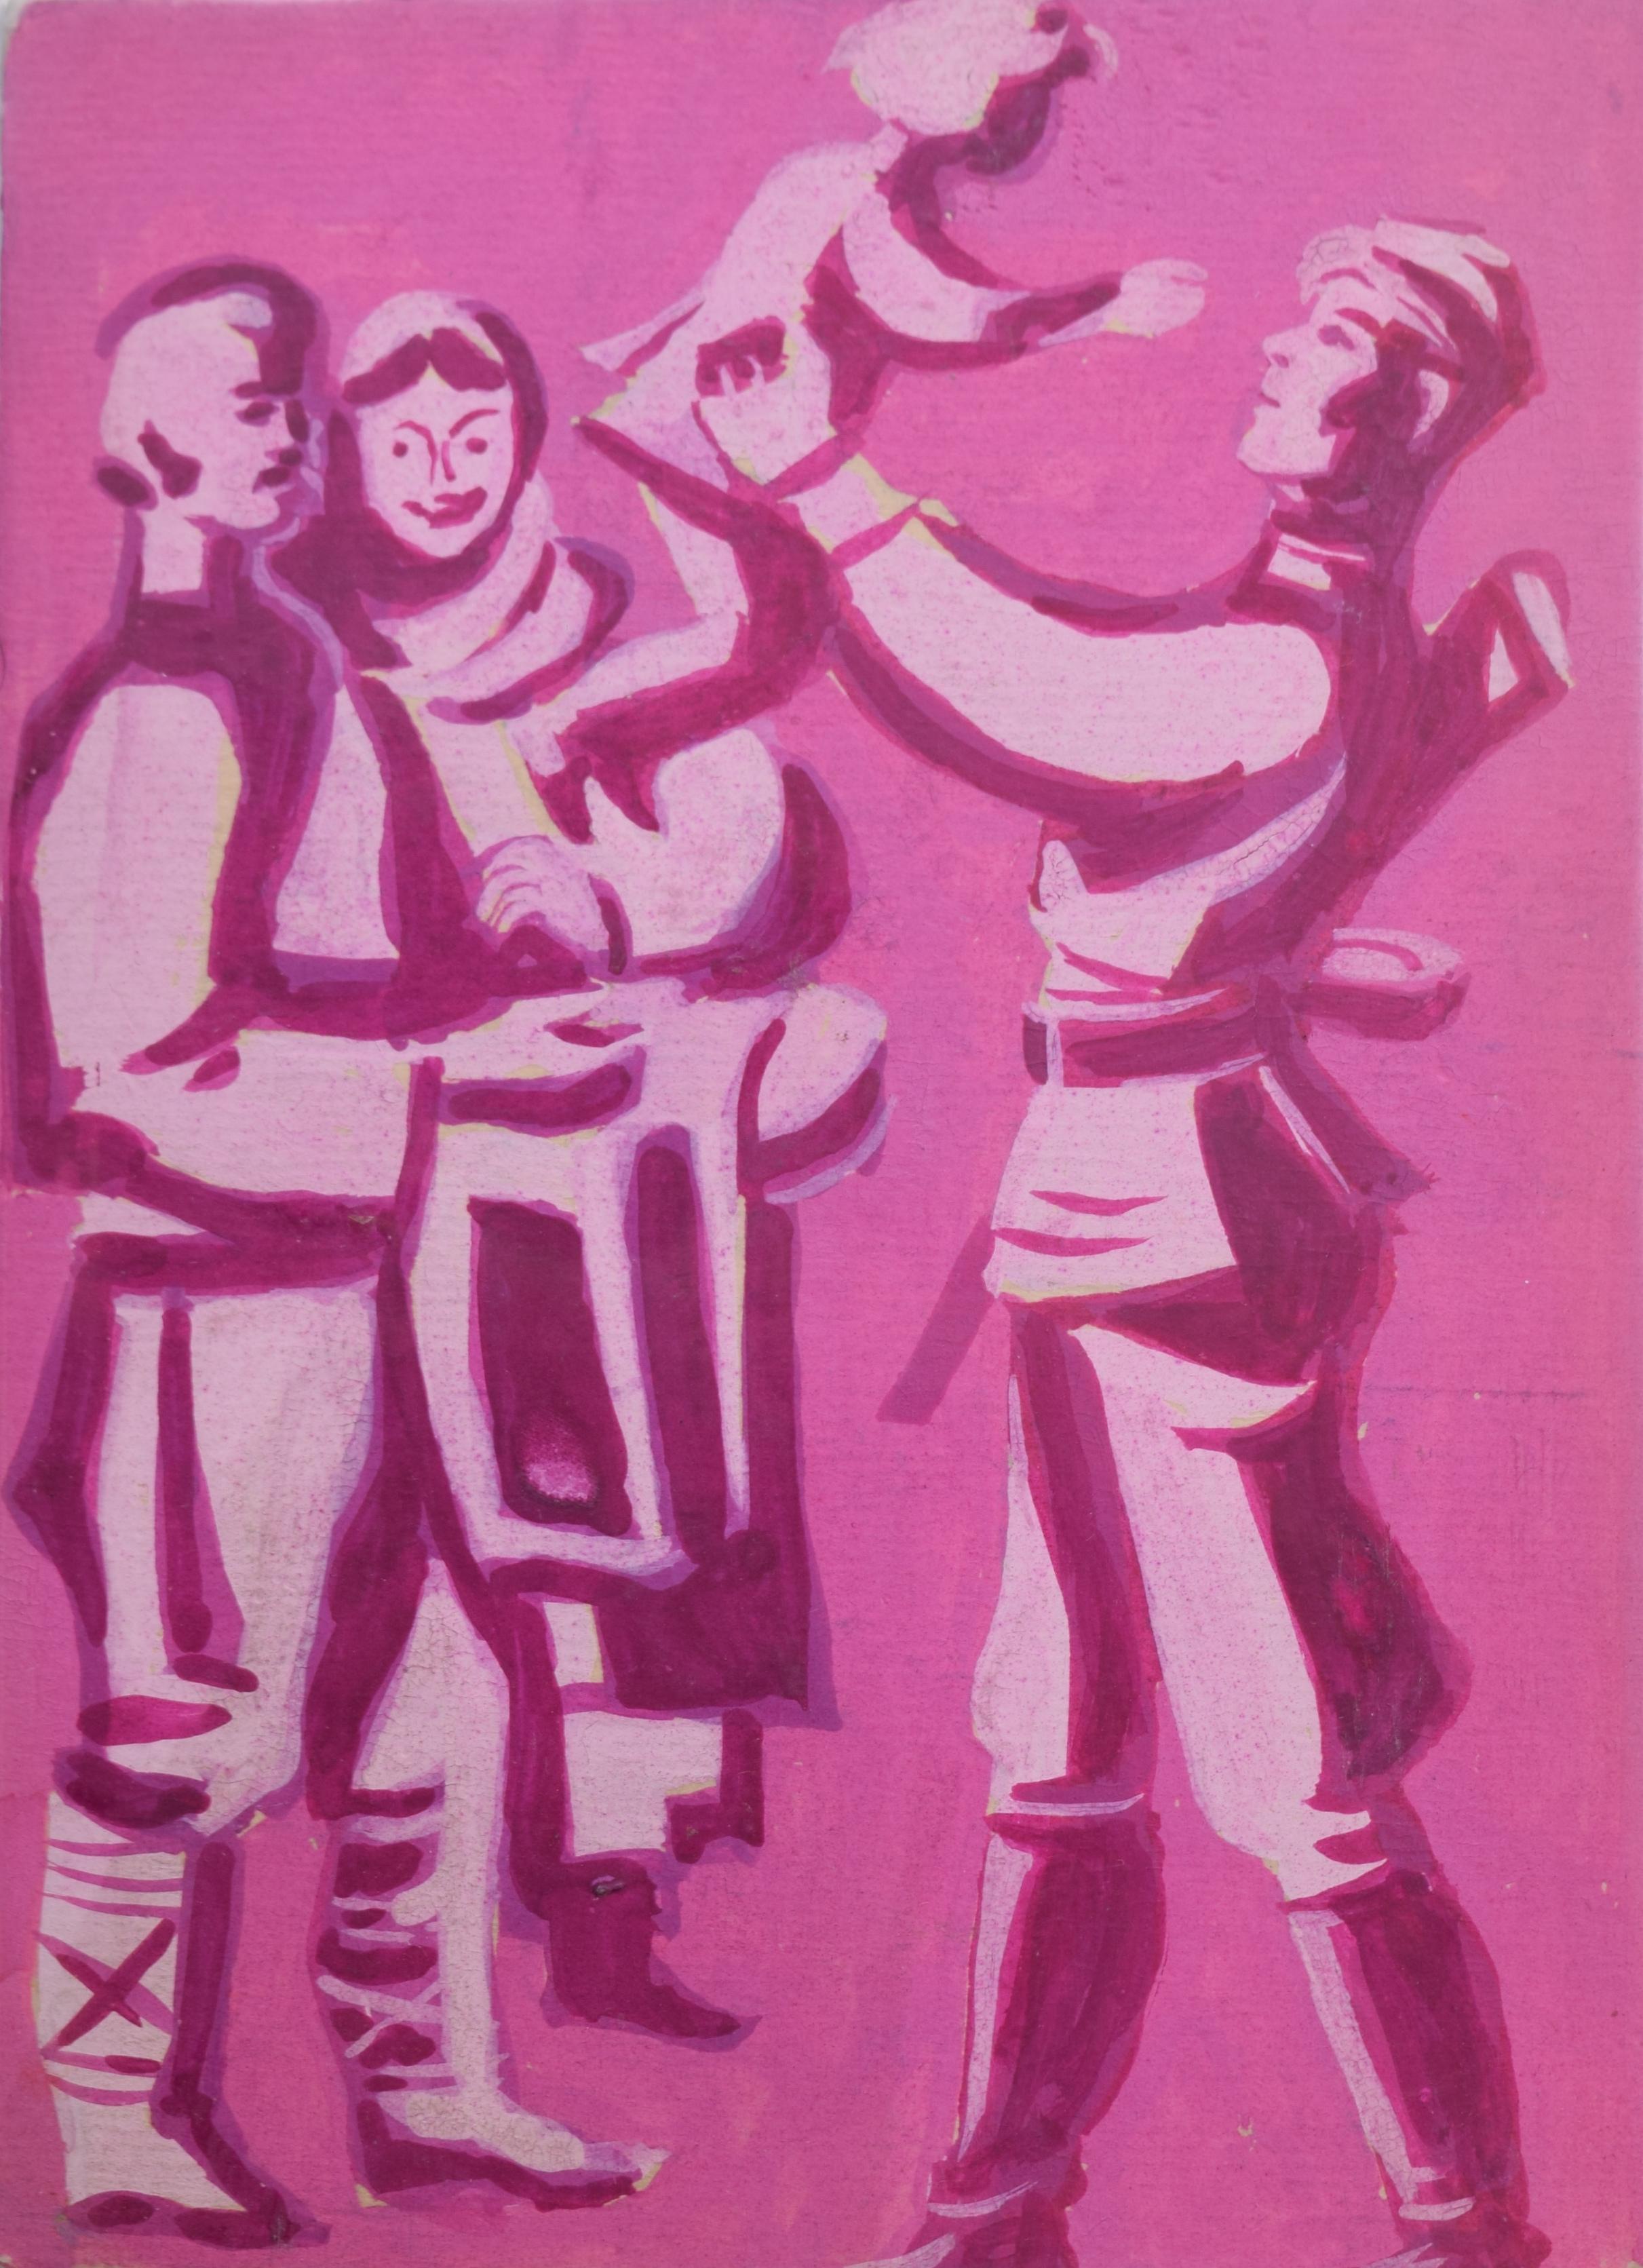 Figurative Art Unknown - Affiche de propagande communiste soviétique et pronataliste de l'Union soviétique, Bulgarie